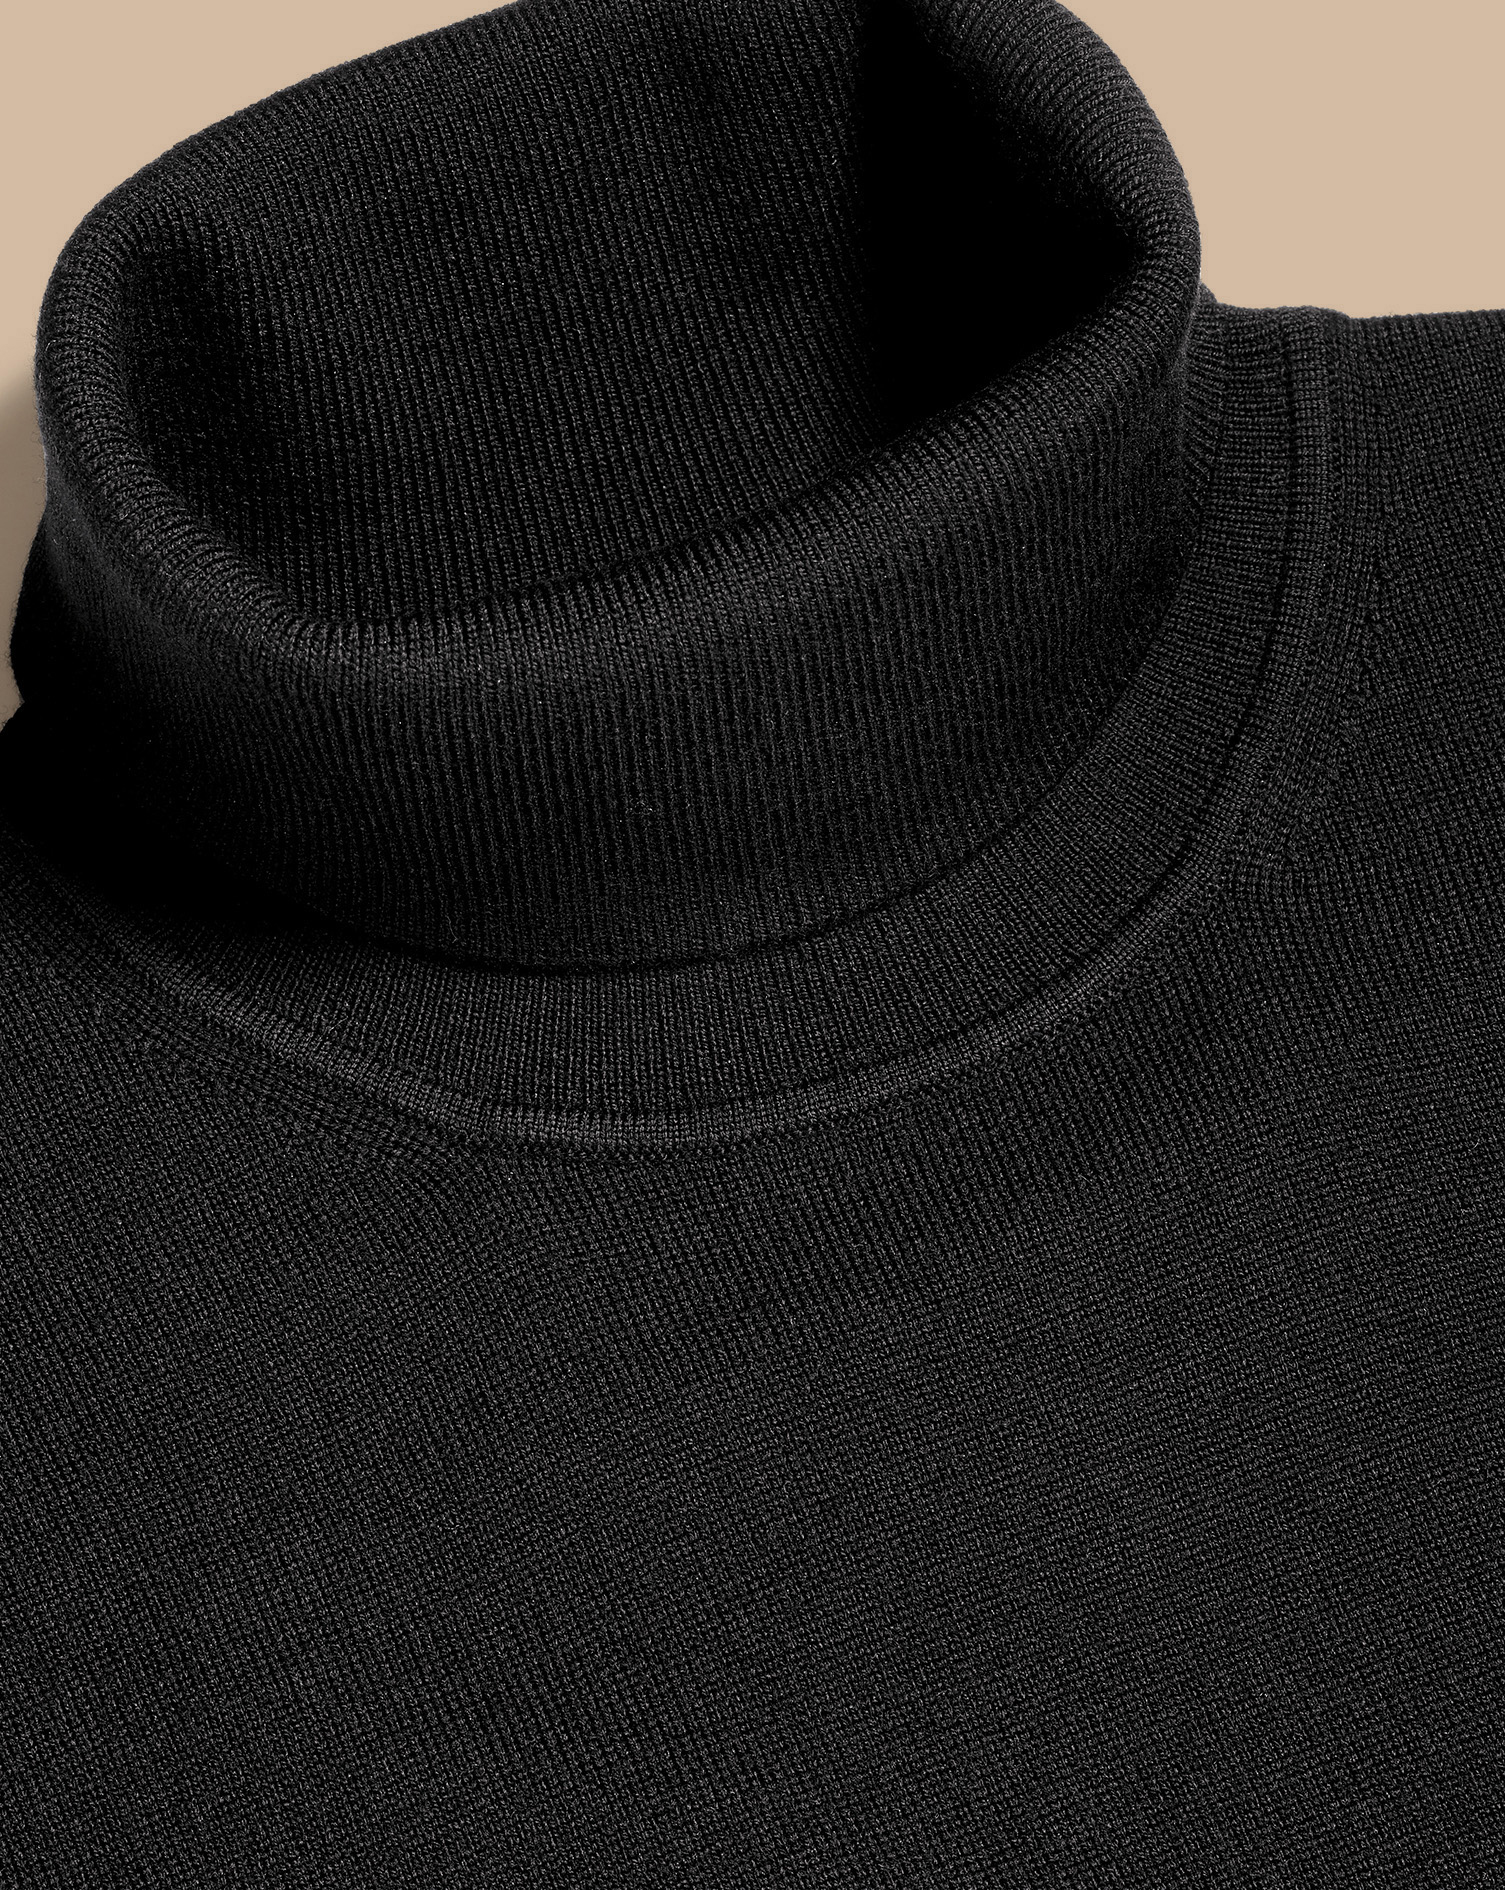 Charles Tyrwhitt Merino Roll Neck Sweater In Black